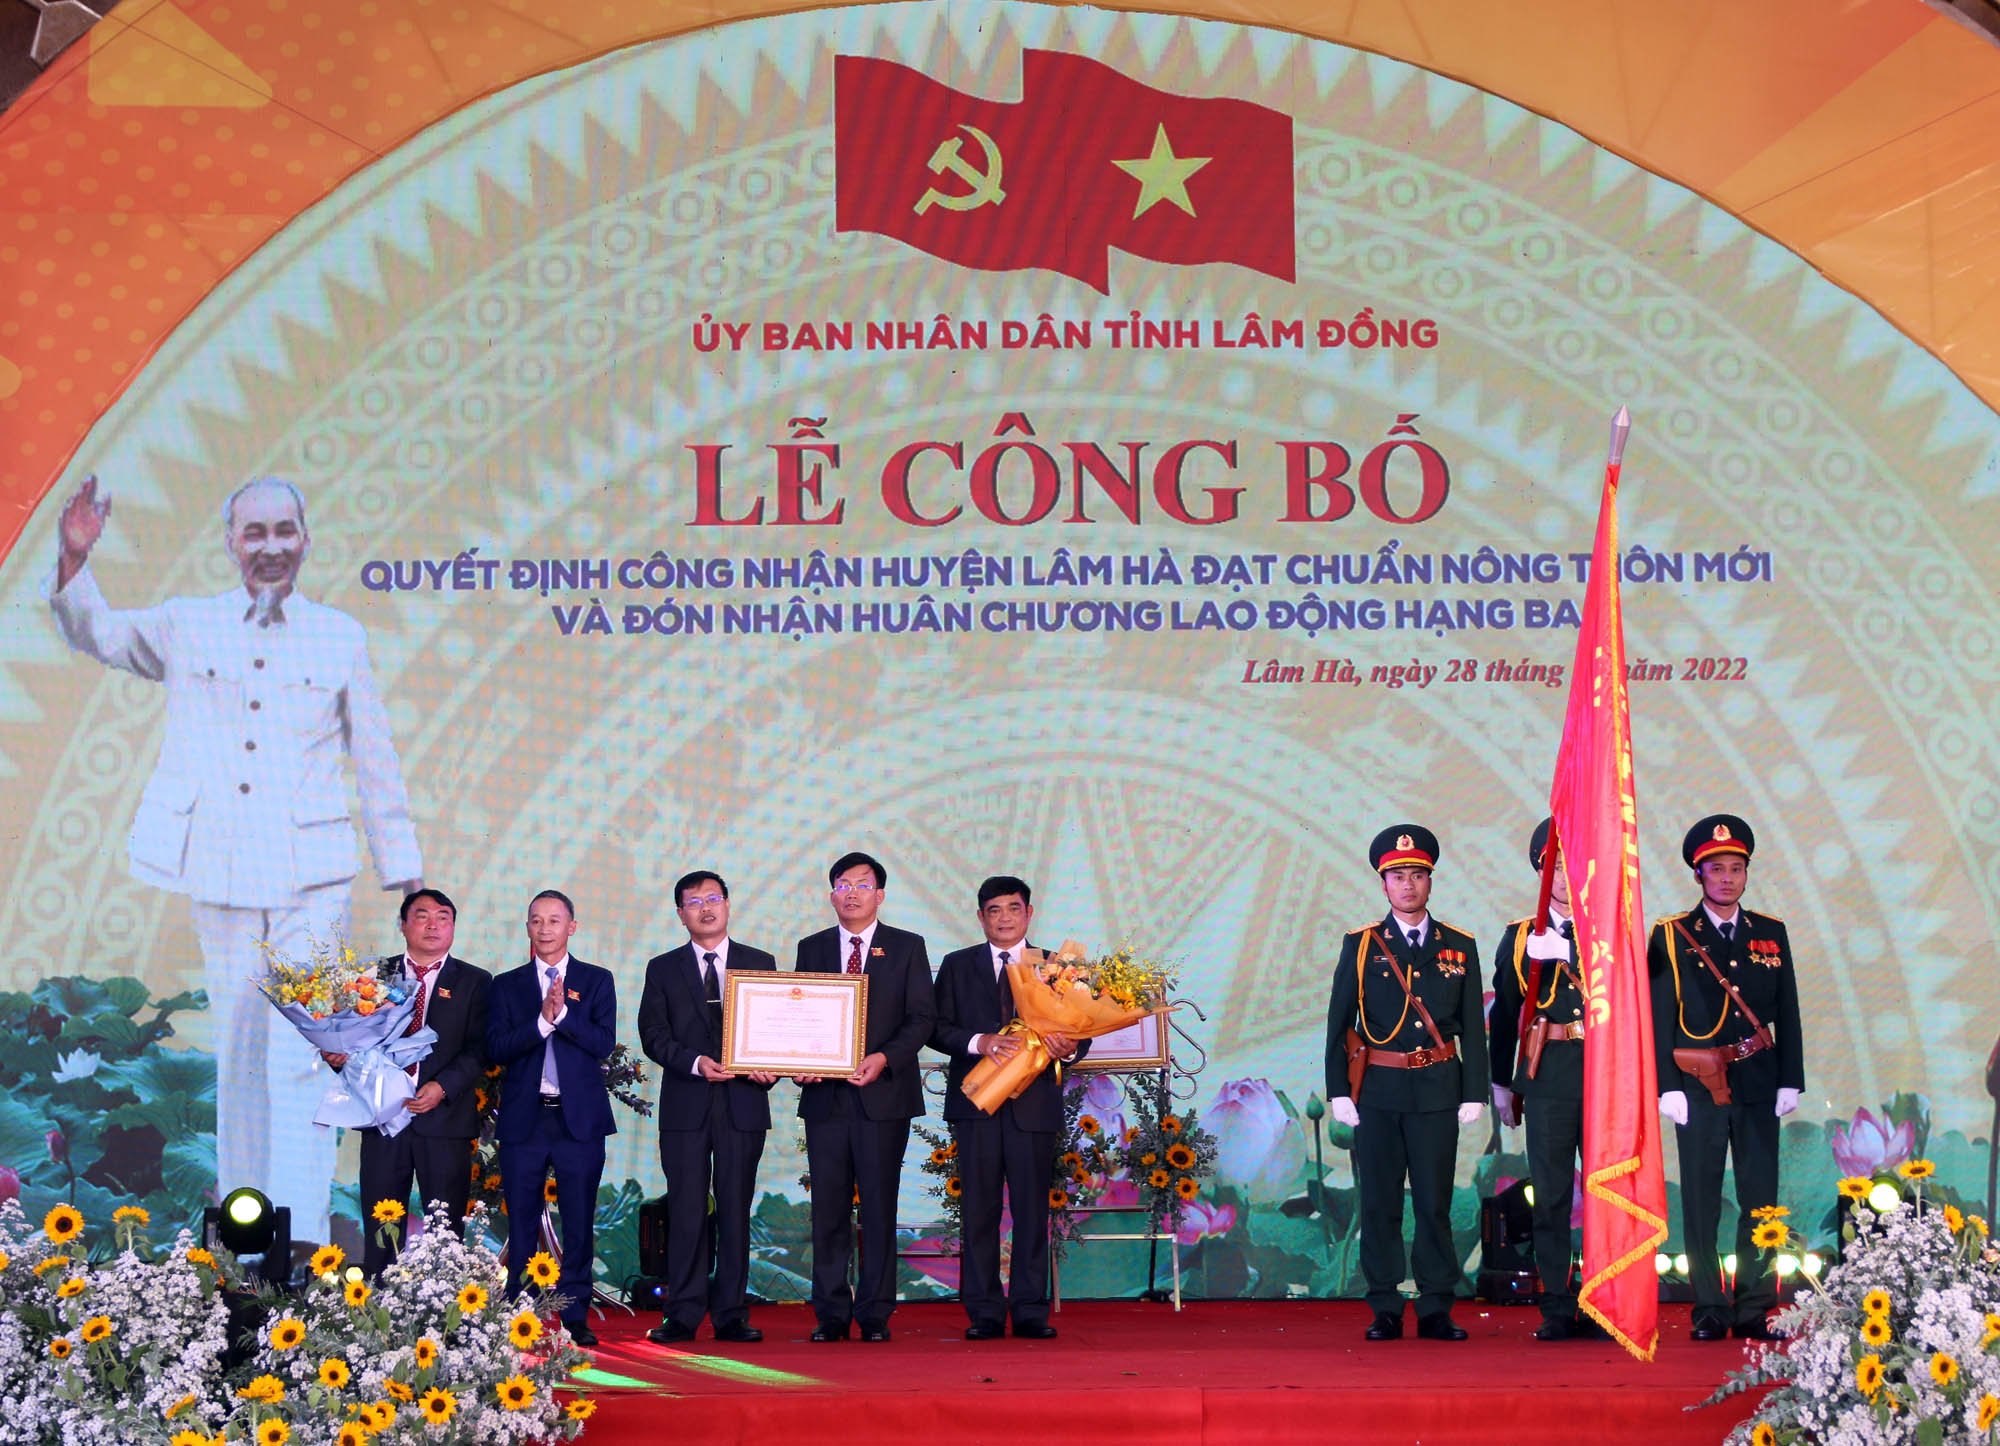 Huyện Lâm Hà về đích nông thôn mới, đón nhận Huân chương lao động hạng Ba của Chủ tịch nước - Ảnh 1.